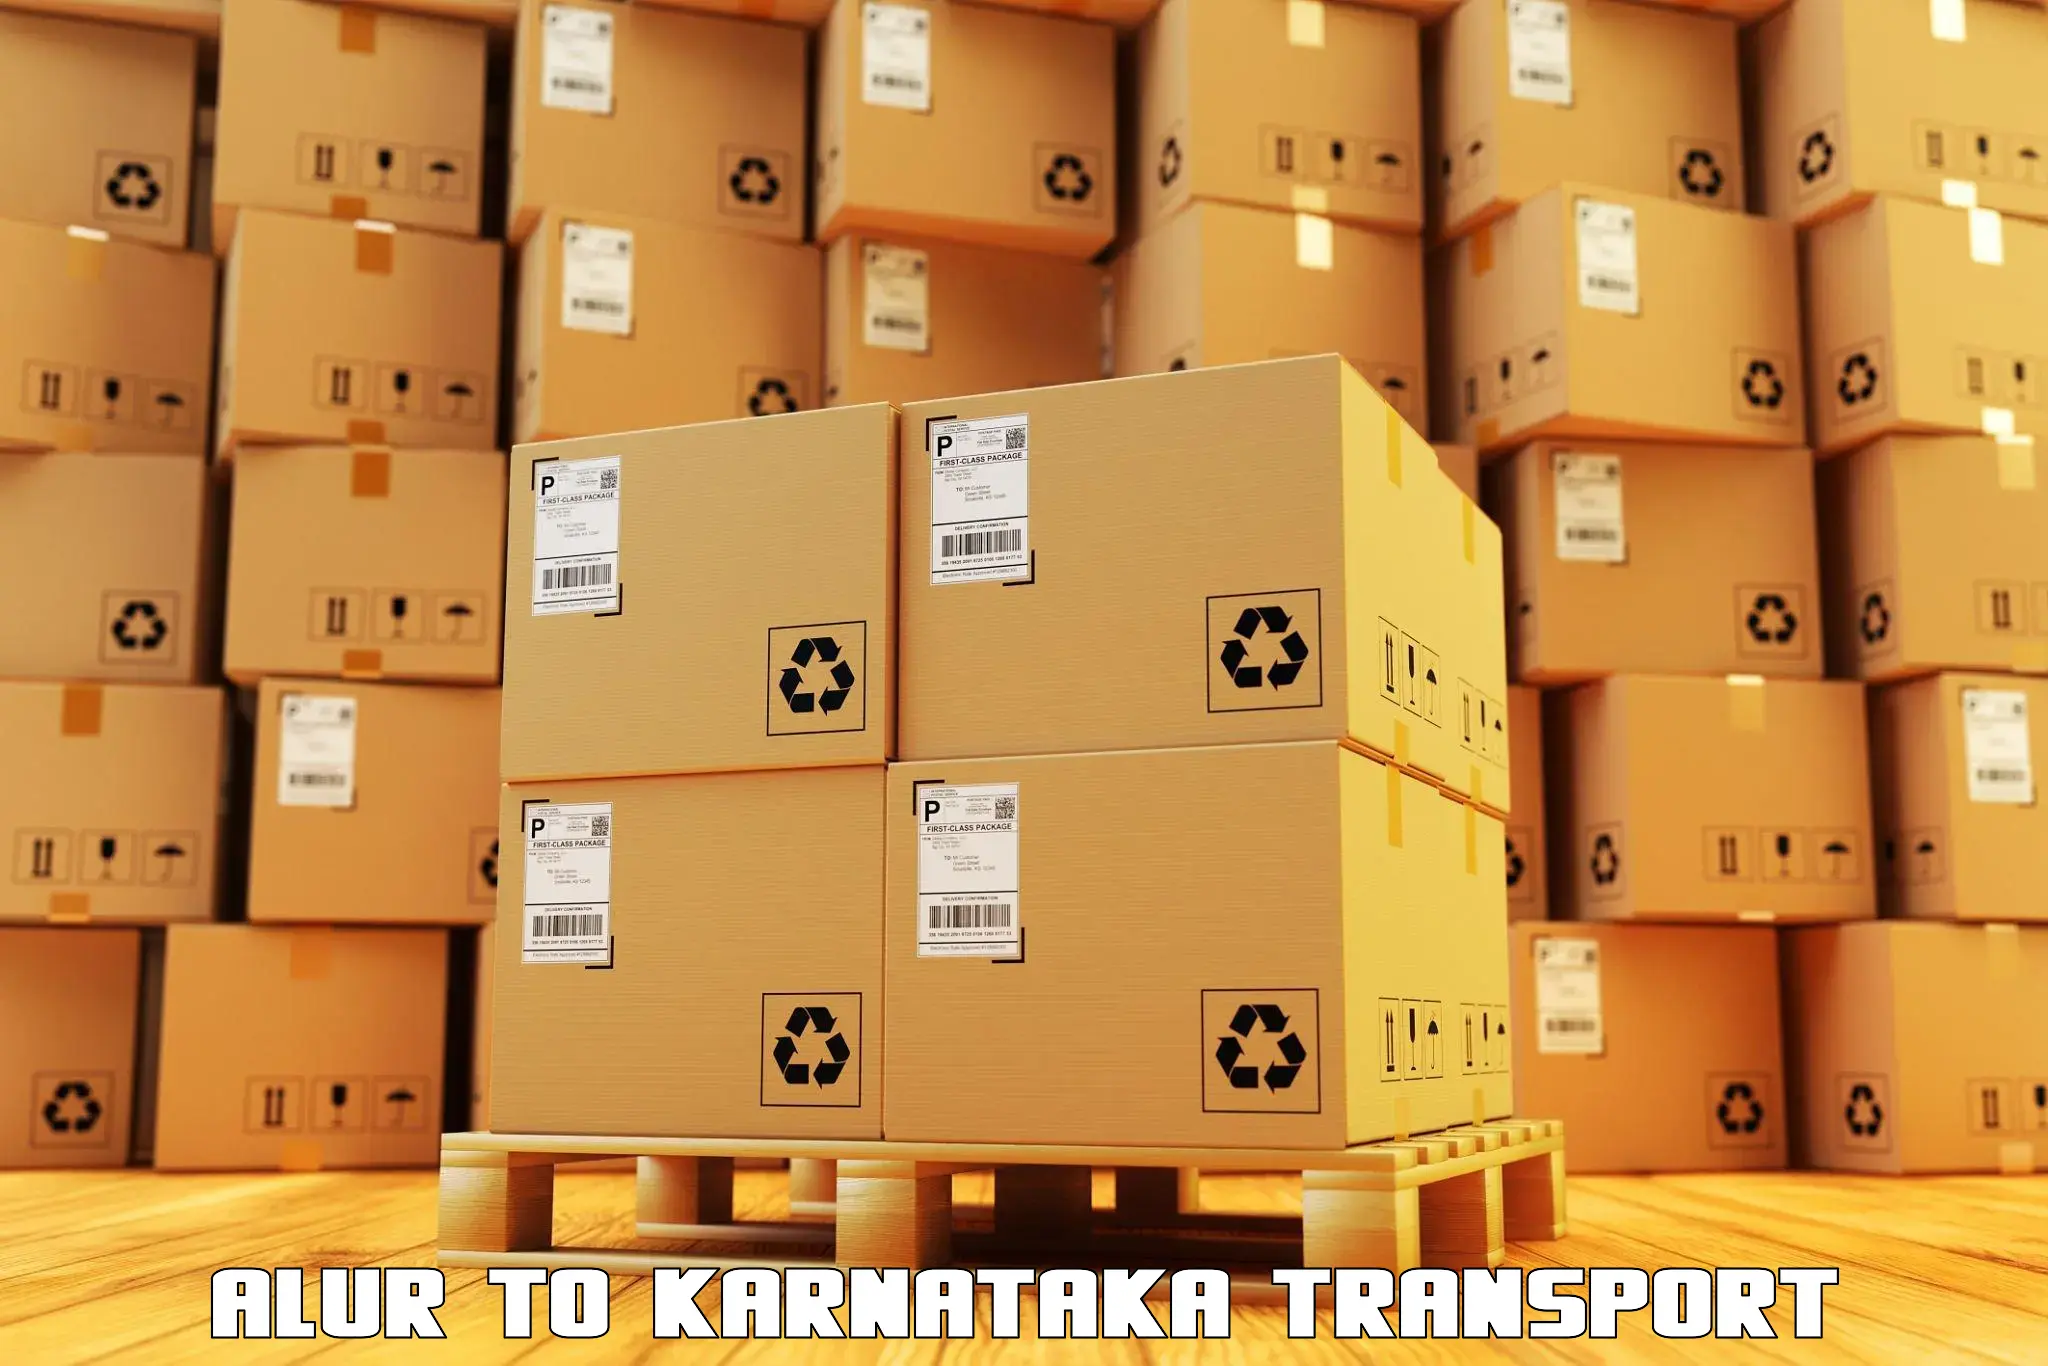 Bike transport service Alur to Karnataka